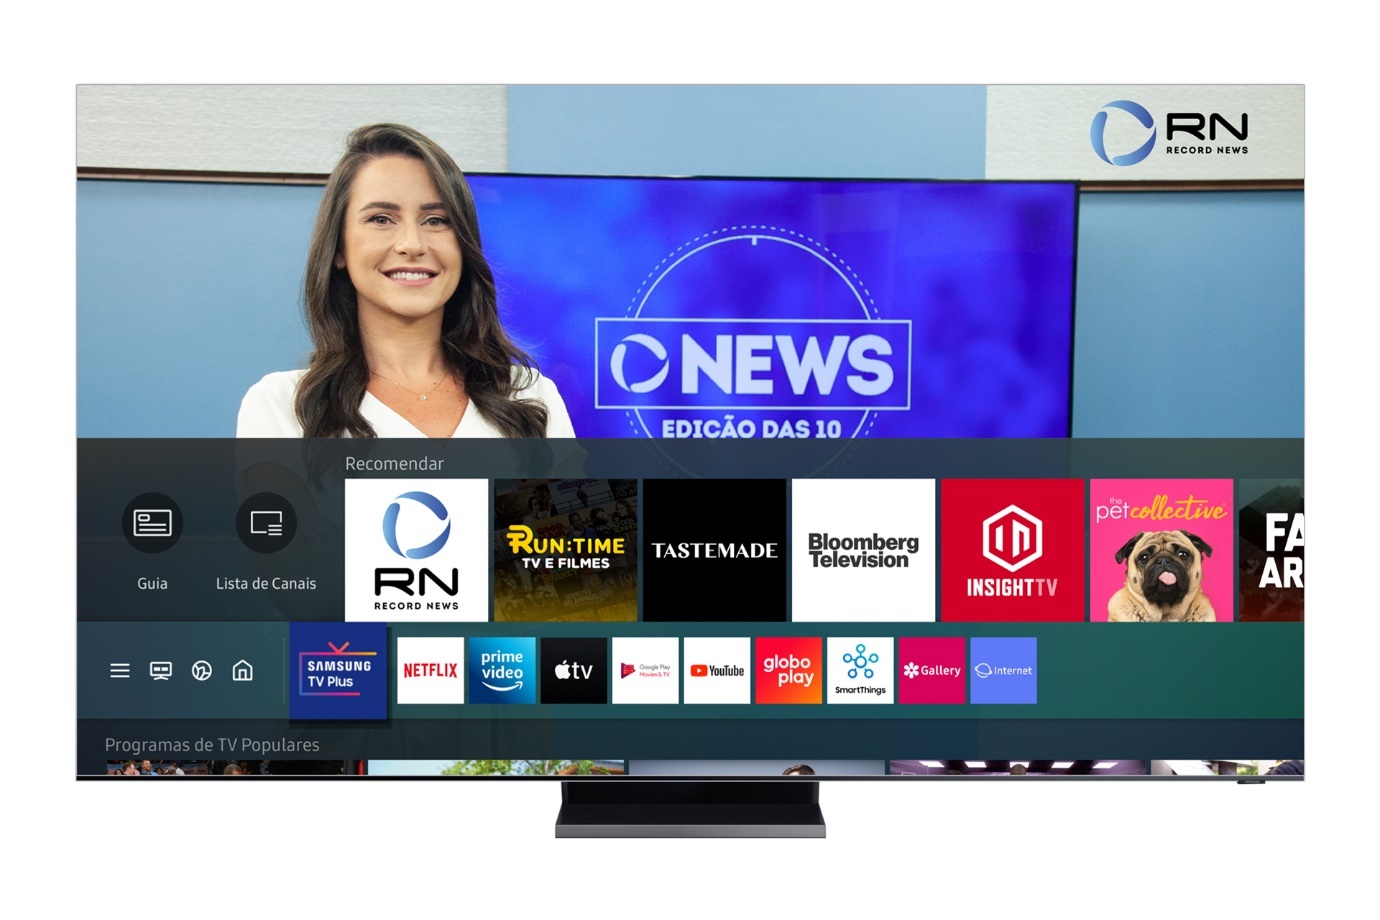 Samsung TV Plus e Pluto TV lançam novos canais gratuitos ...